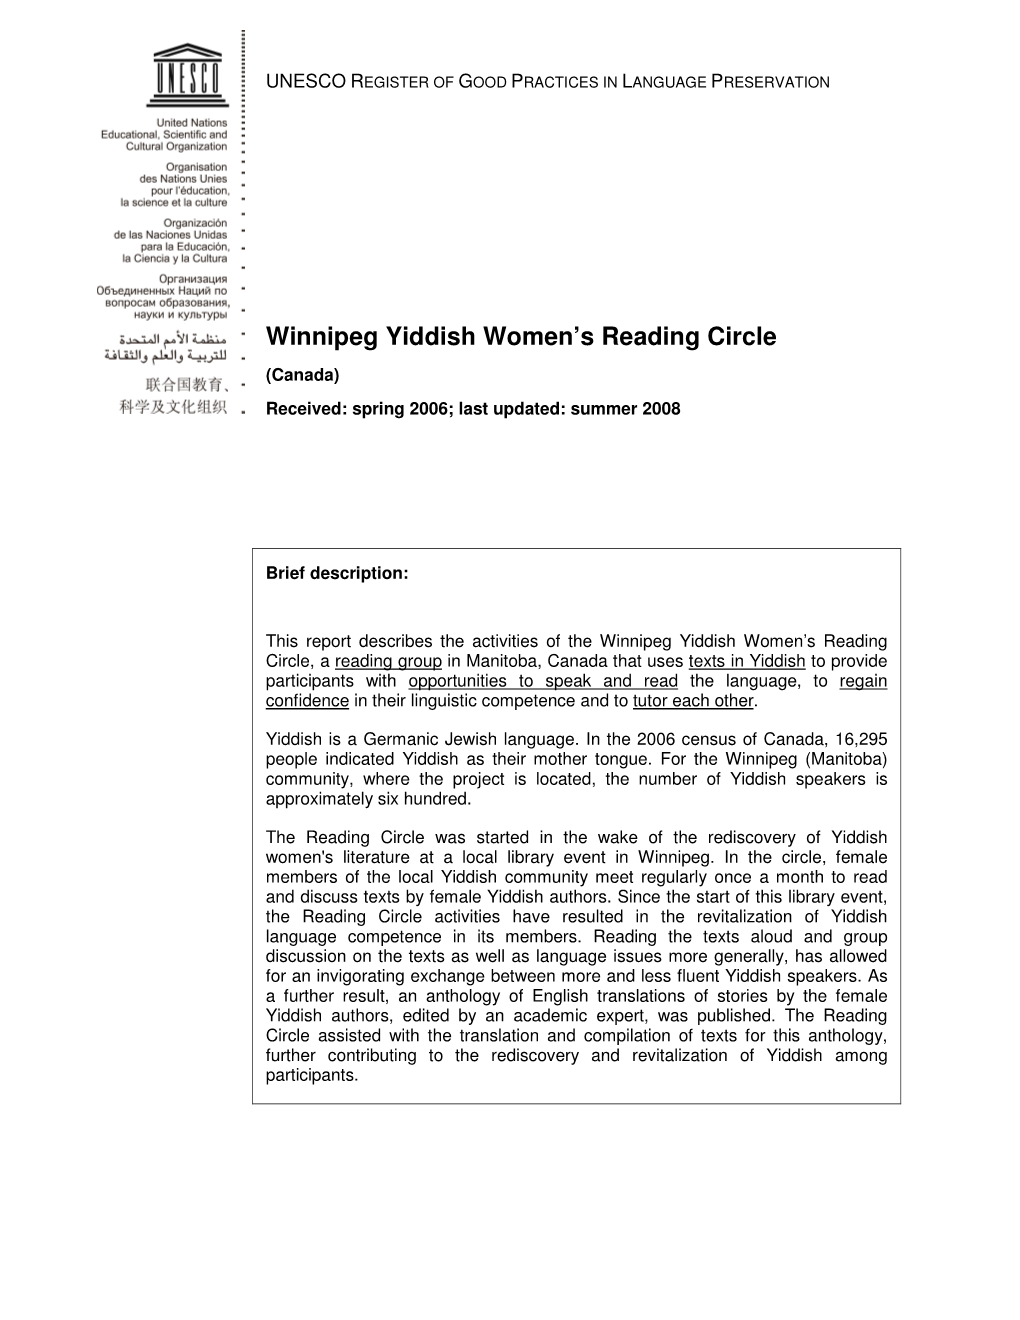 Winnipeg Yiddish Women's Reading Circle